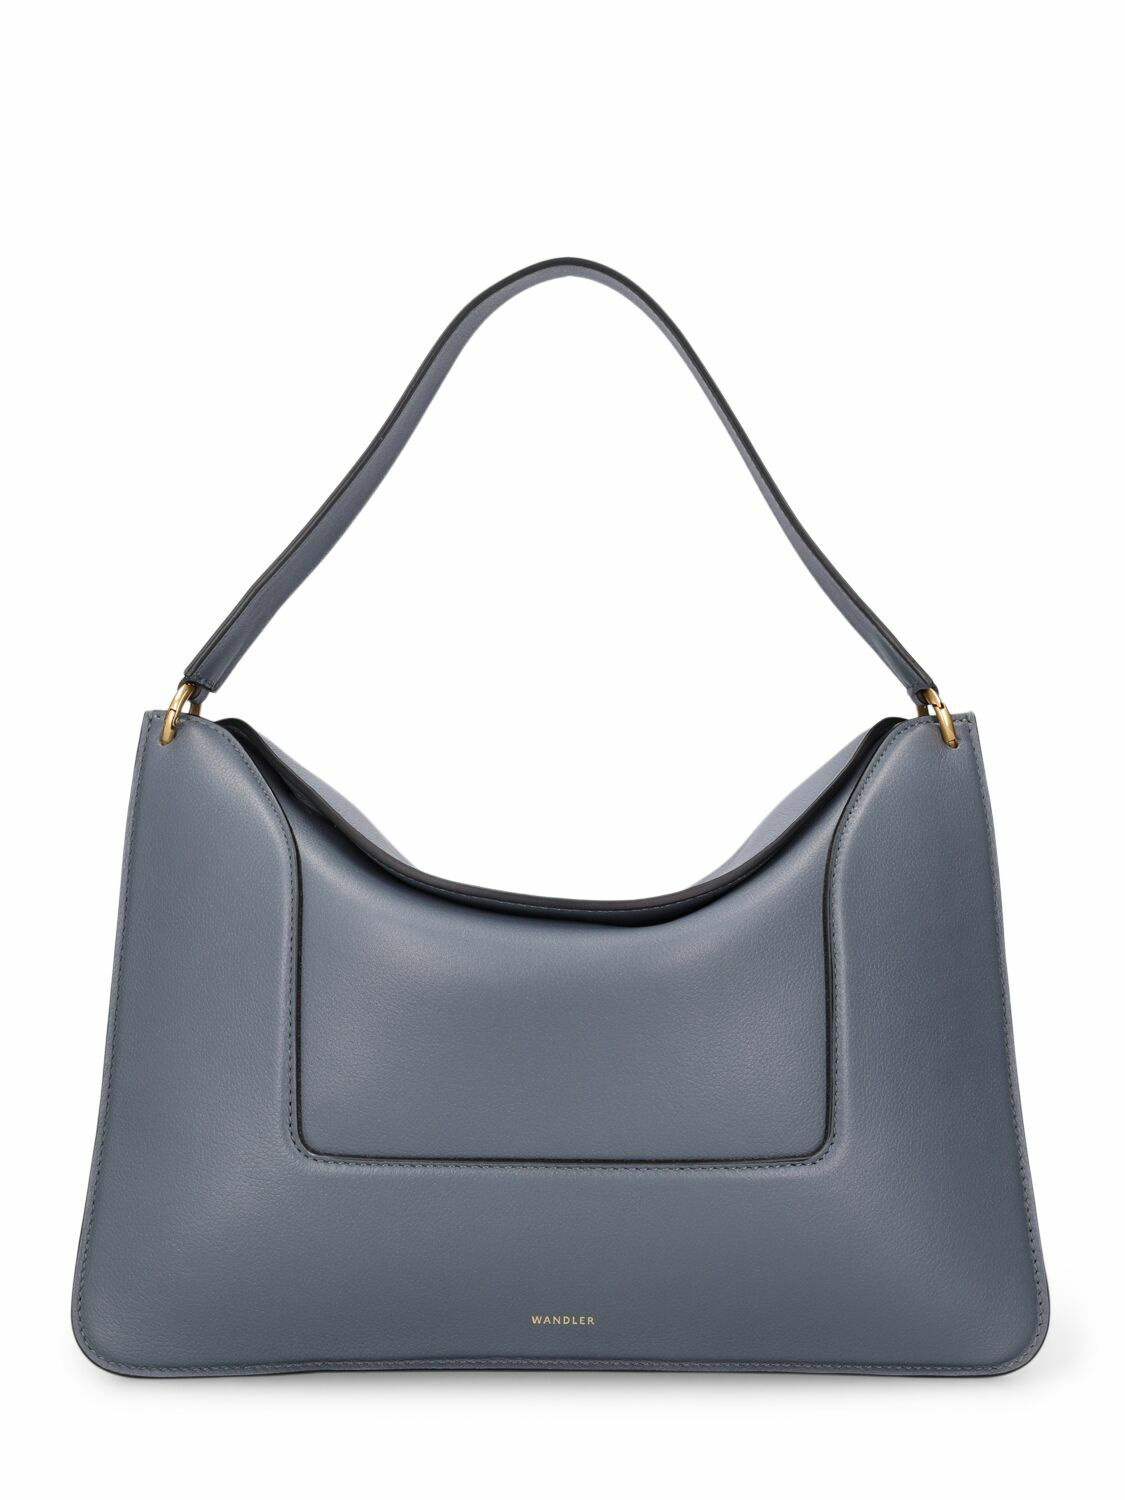 Photo: WANDLER - Big Penelope Leather Shoulder Bag